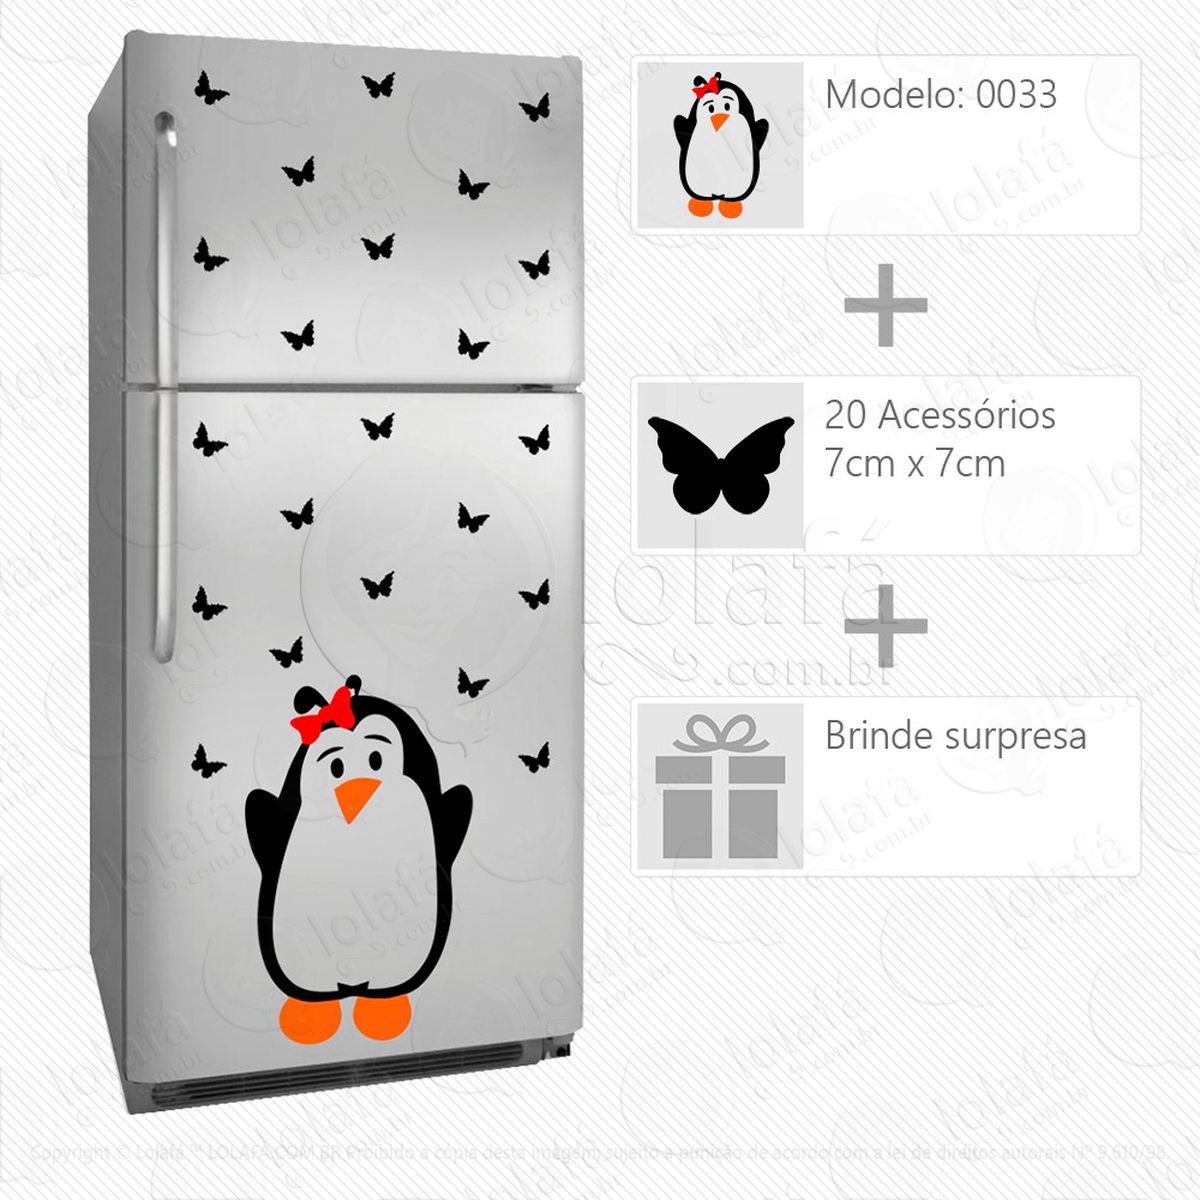 pinguim adesivo para geladeira e frigobar - mod:33